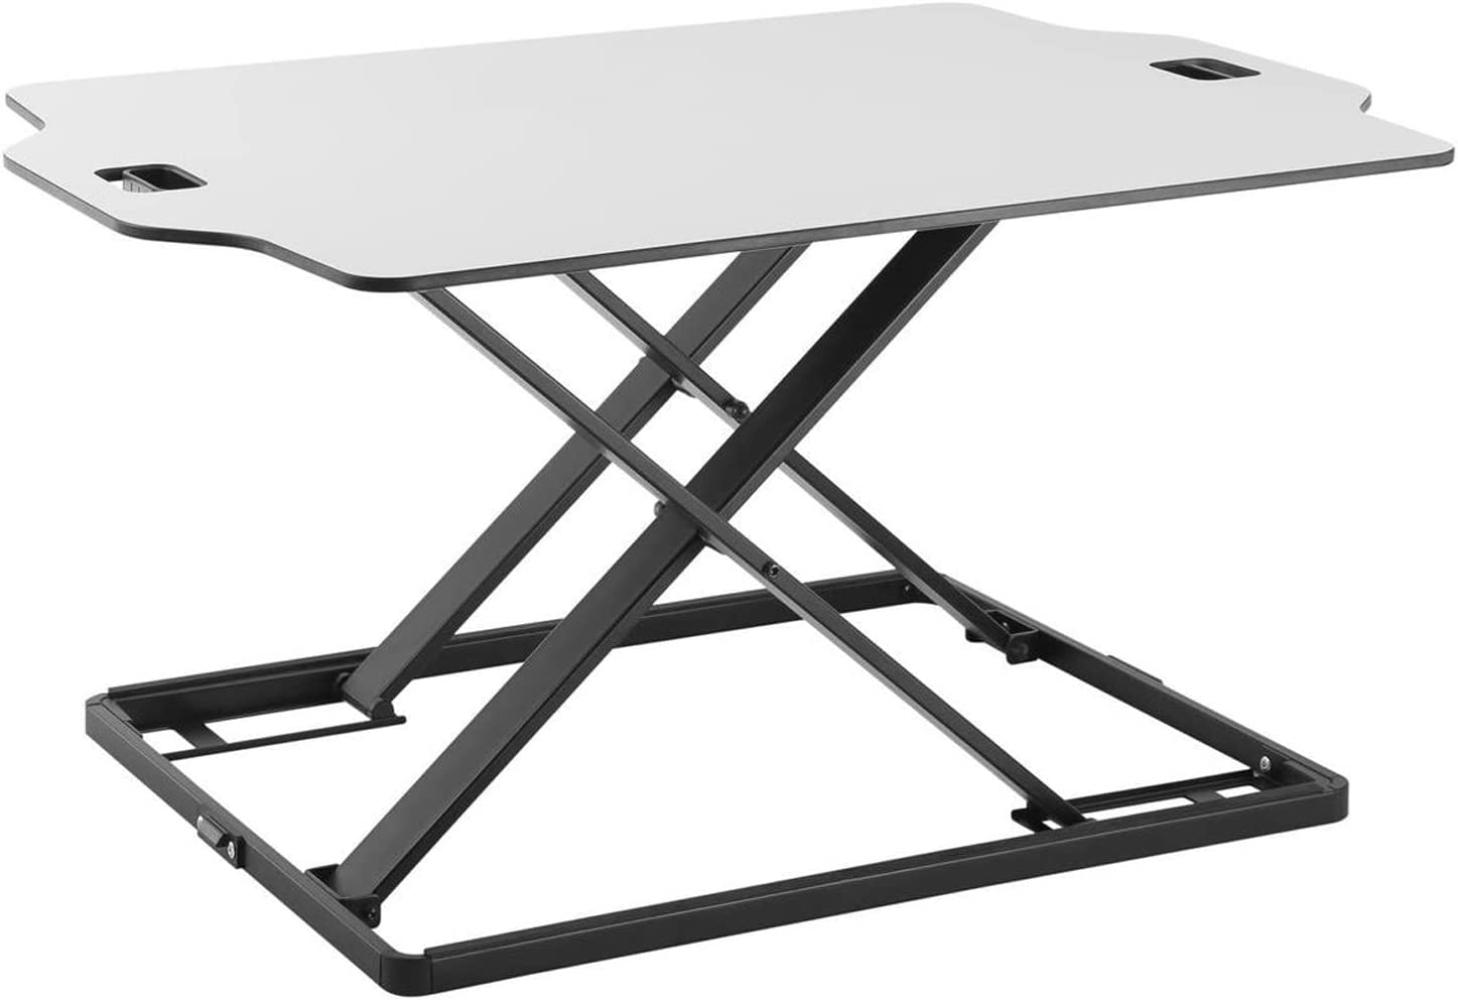 Ergo Office ER-420 Sitz-Steh-Schreibtisch Höhenverstellbarer Schreibtischaufsatz mit Gasfeder Schreibtisch Konverter für Monitor Laptop bis max. 10kg (Weiß) Bild 1